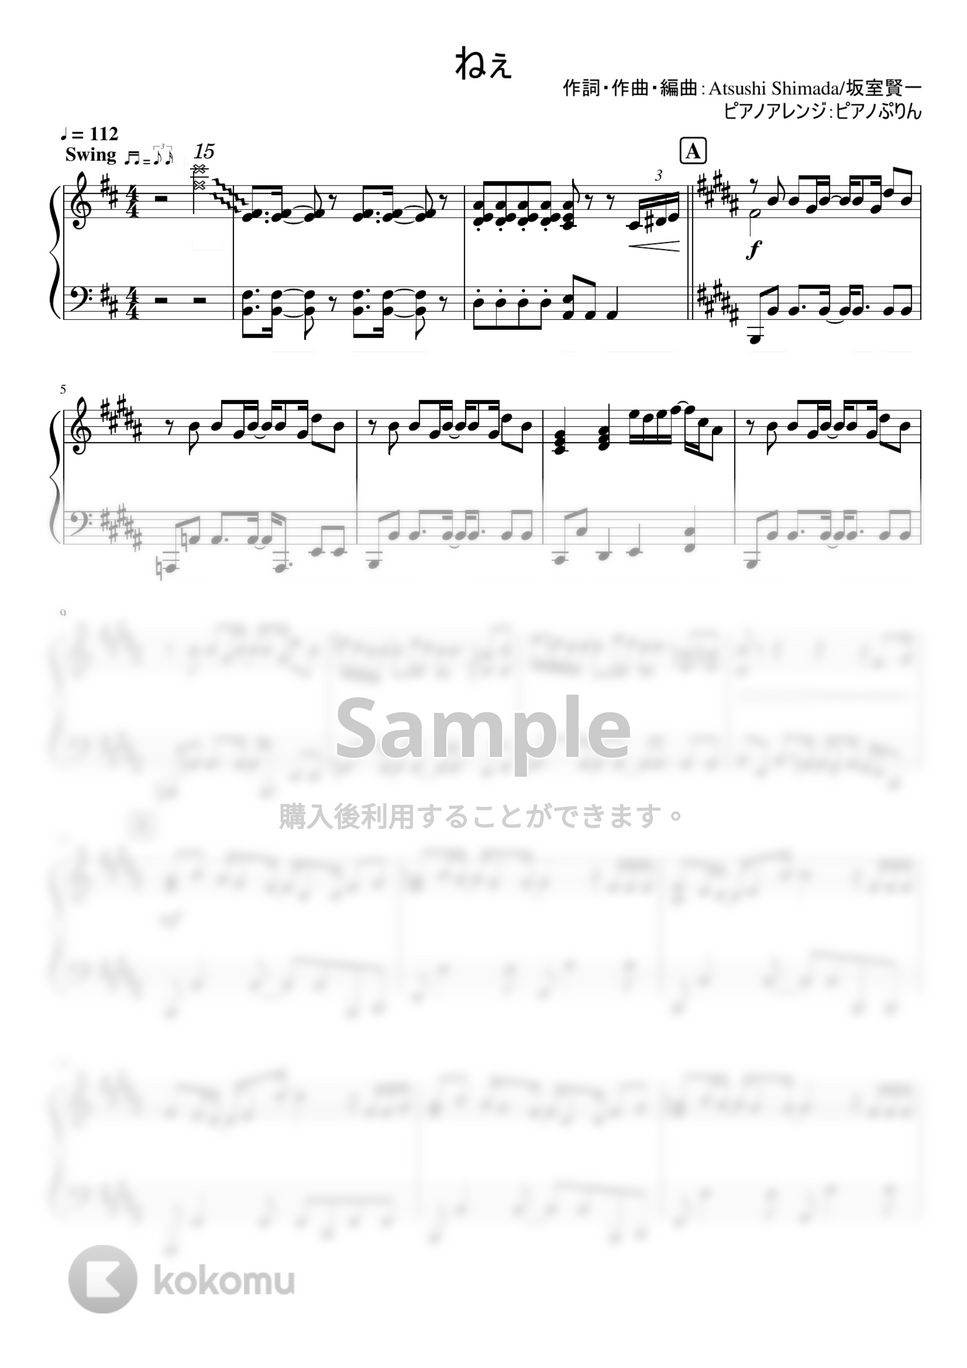 なにわ男子 - ねぇ (なにわ男子2nd Album『POPMALL』/中級楽譜) by ピアノぷりん